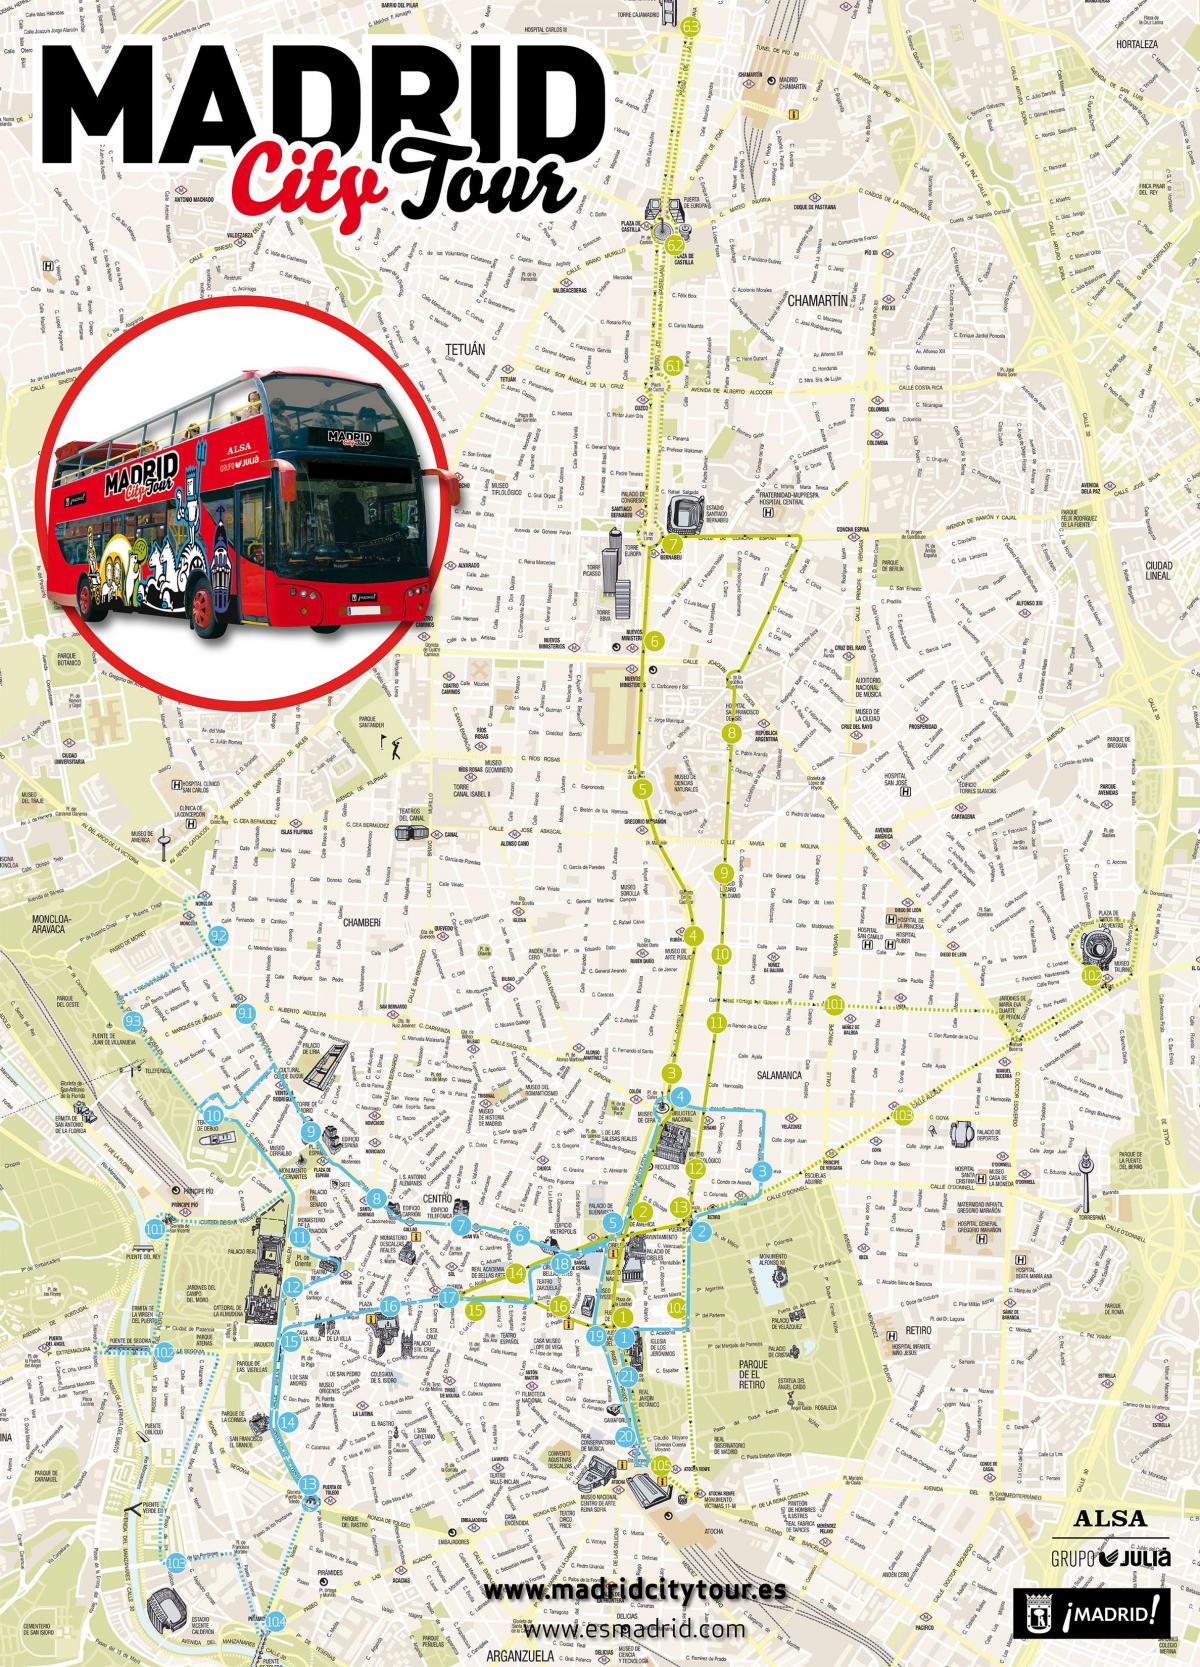 मैड्रिड पर्यटन स्थलों का भ्रमण बस के नक्शे